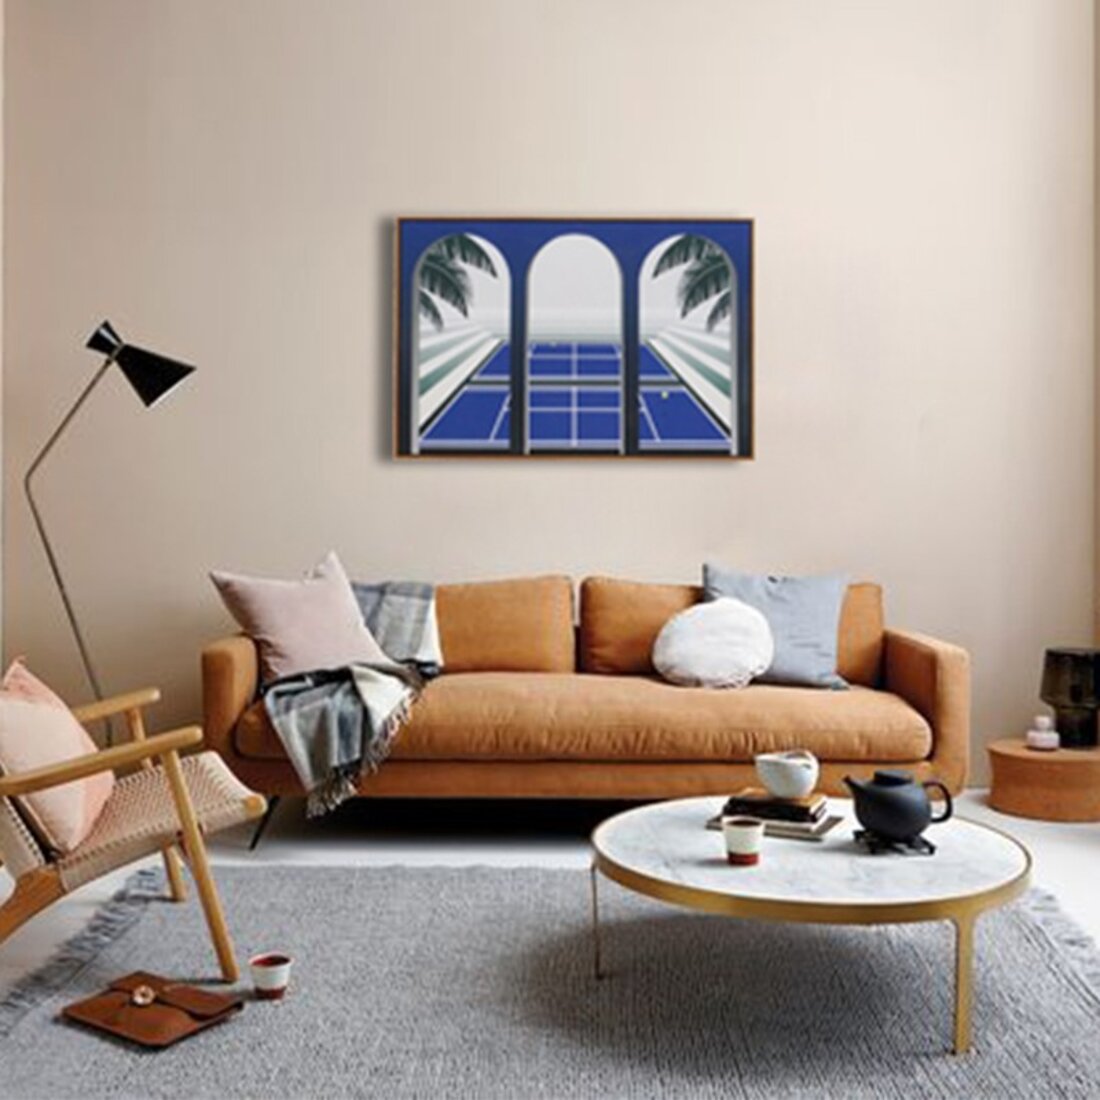 现代家装客厅装饰挂画背景墙效果图片 – 设计本装修效果图